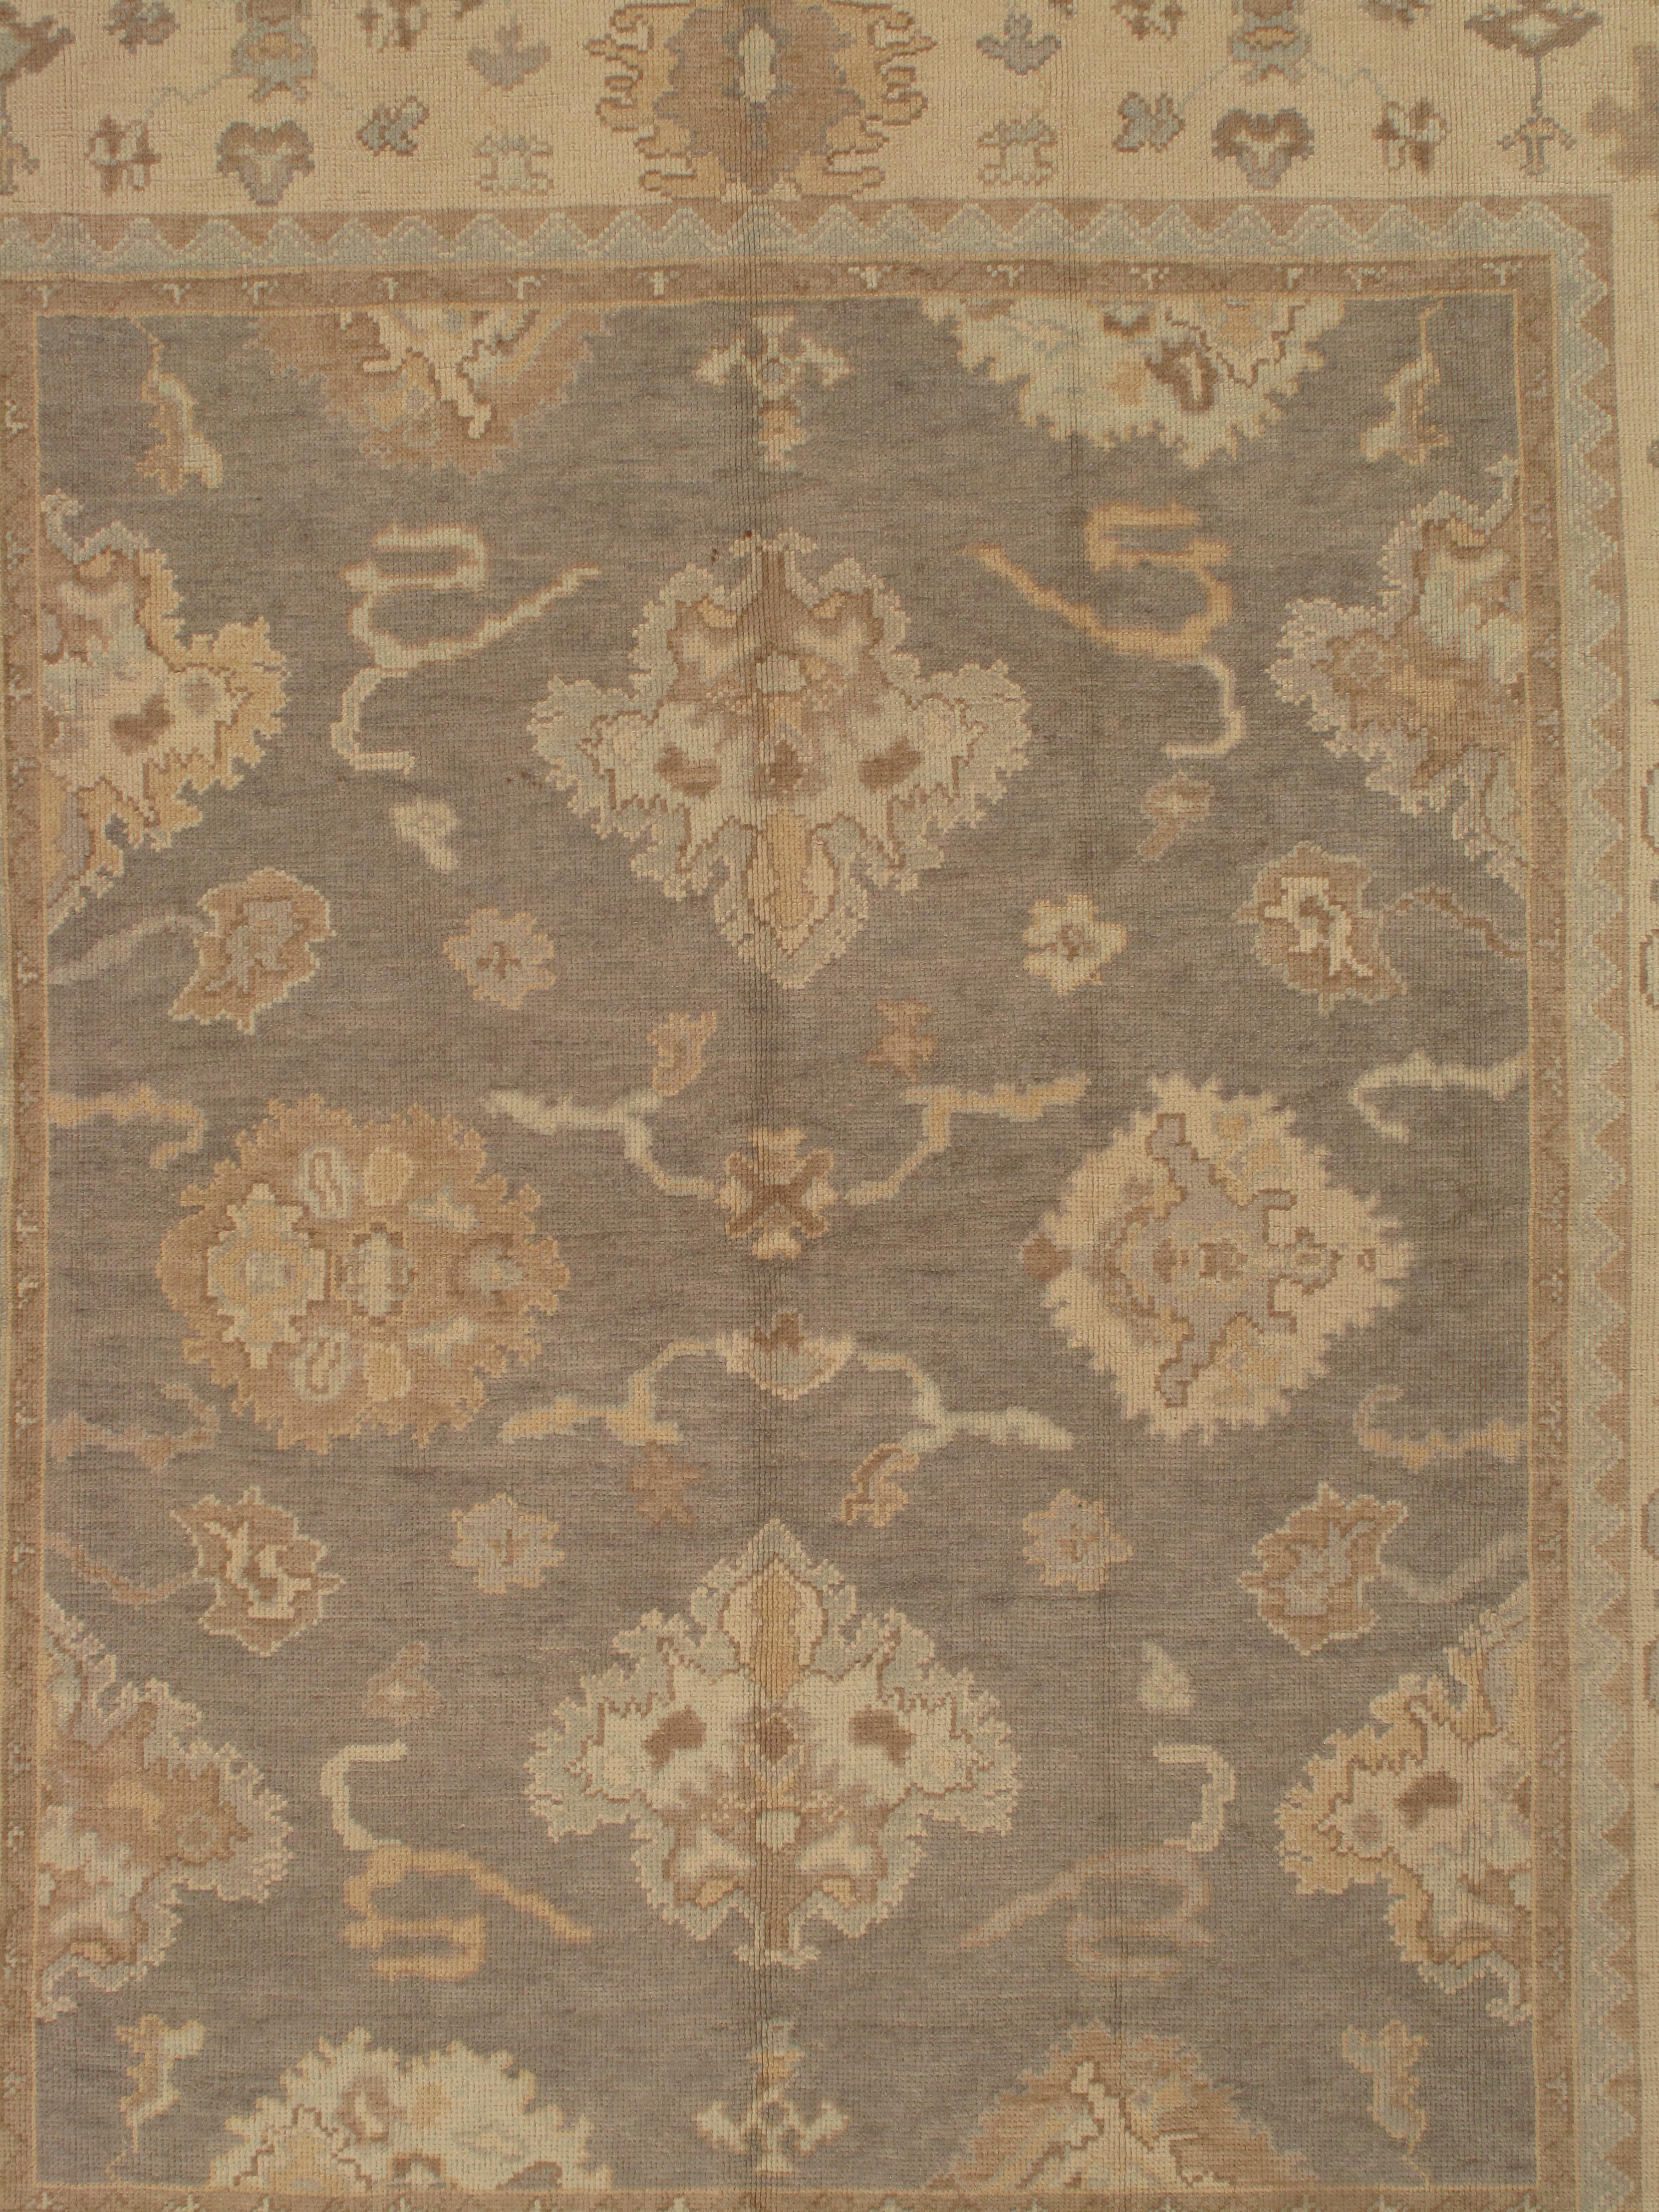 Vintage Oushak Carpet, Oriental Rug, Handmade Grey, Ivory, Saffron For Sale 1